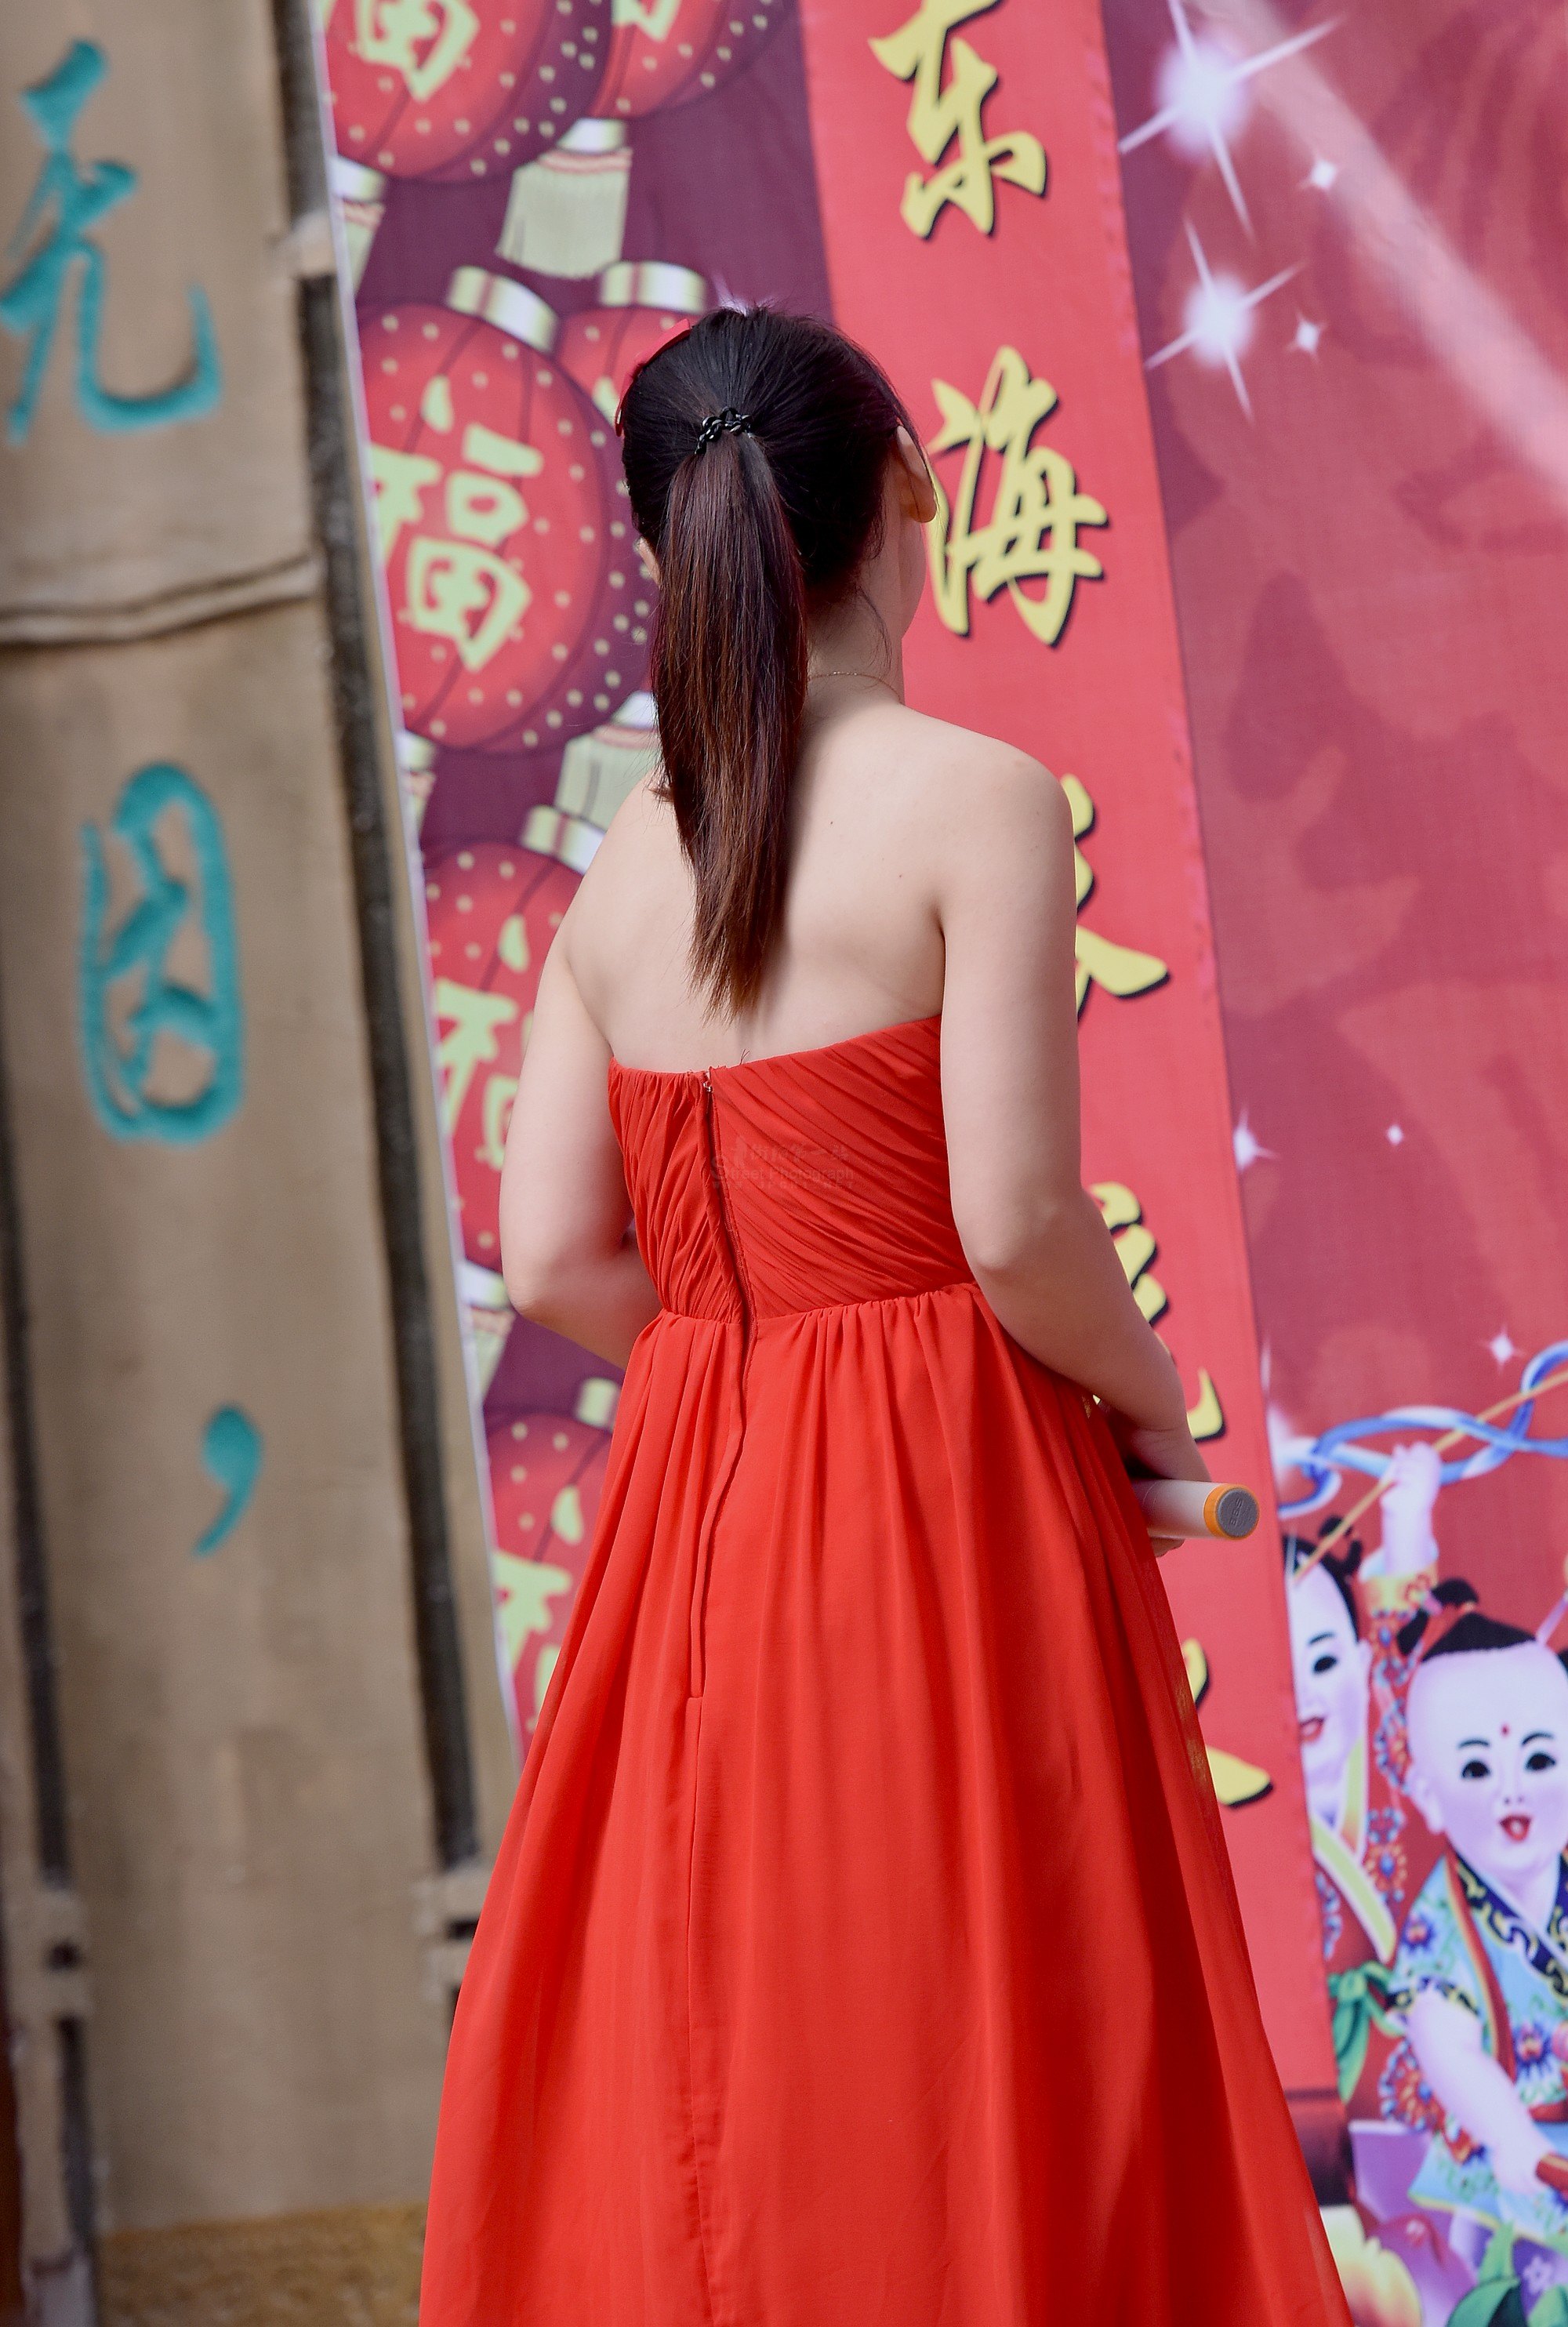 大红半裙正火热 - NUYOU SINGAPORE《女友》 - 最时尚中文杂志